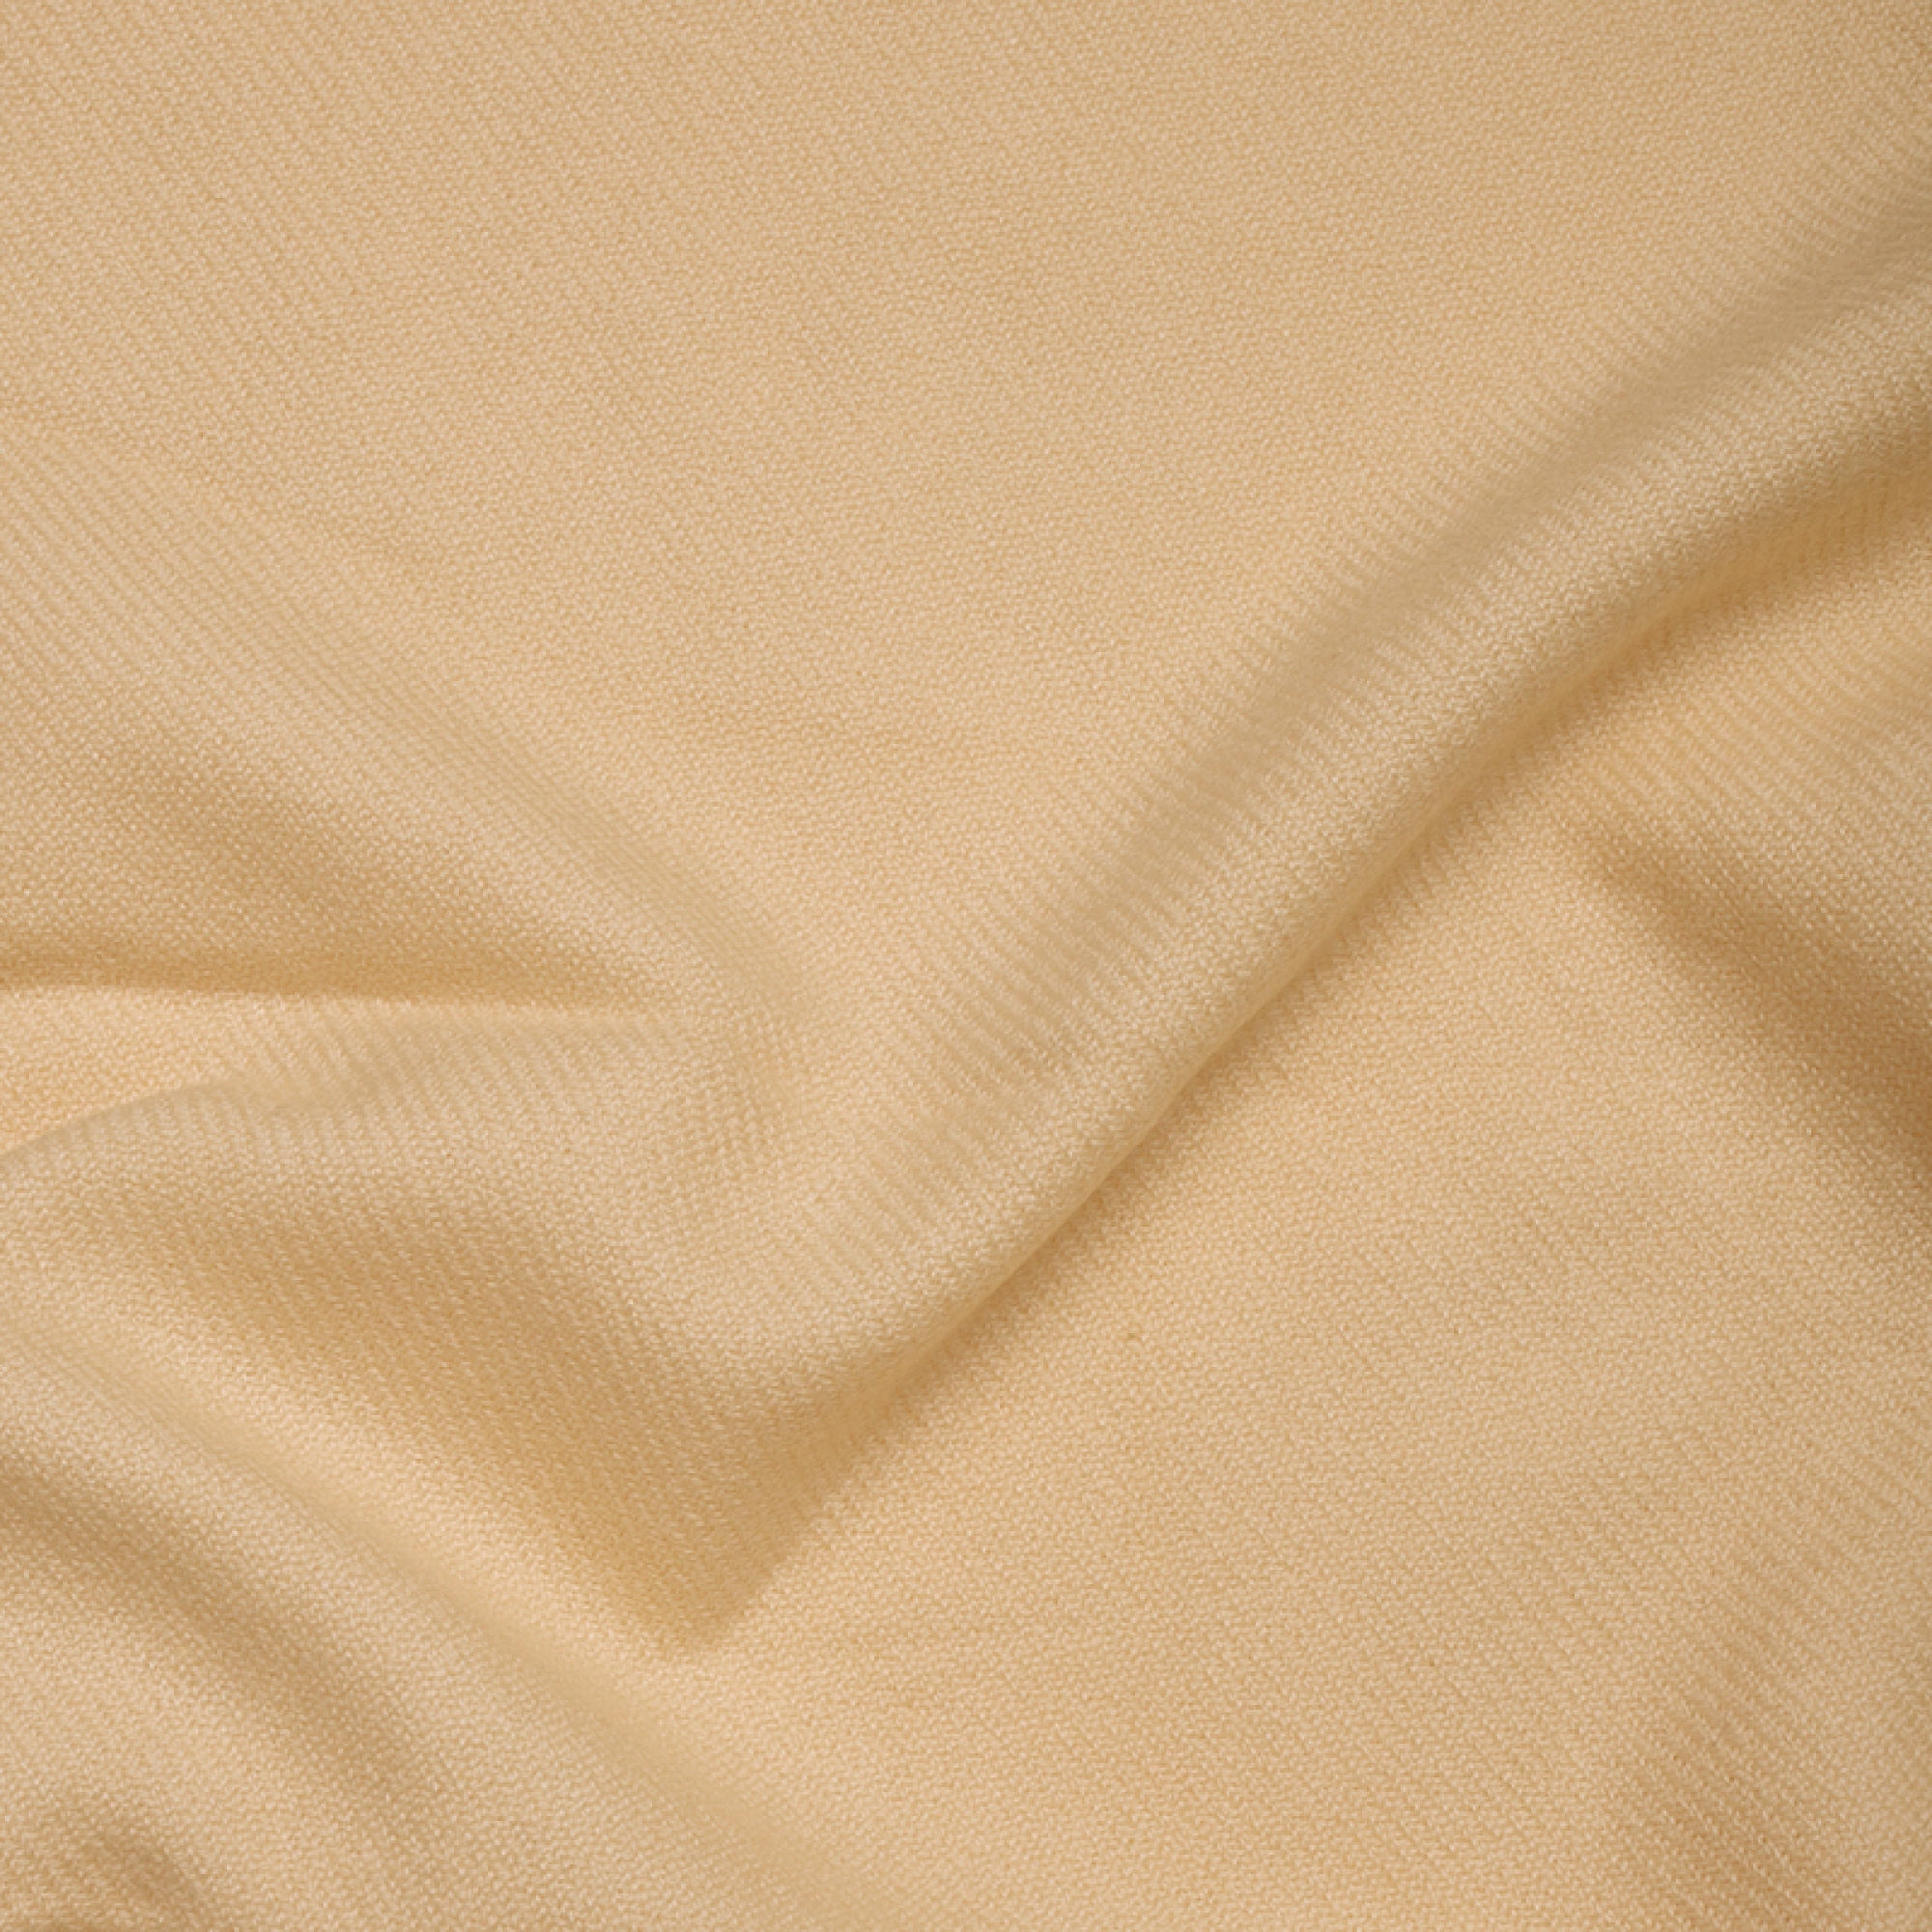 Cachemire accessoires couvertures plaids toodoo plain l 220 x 220 champagne 220x220cm